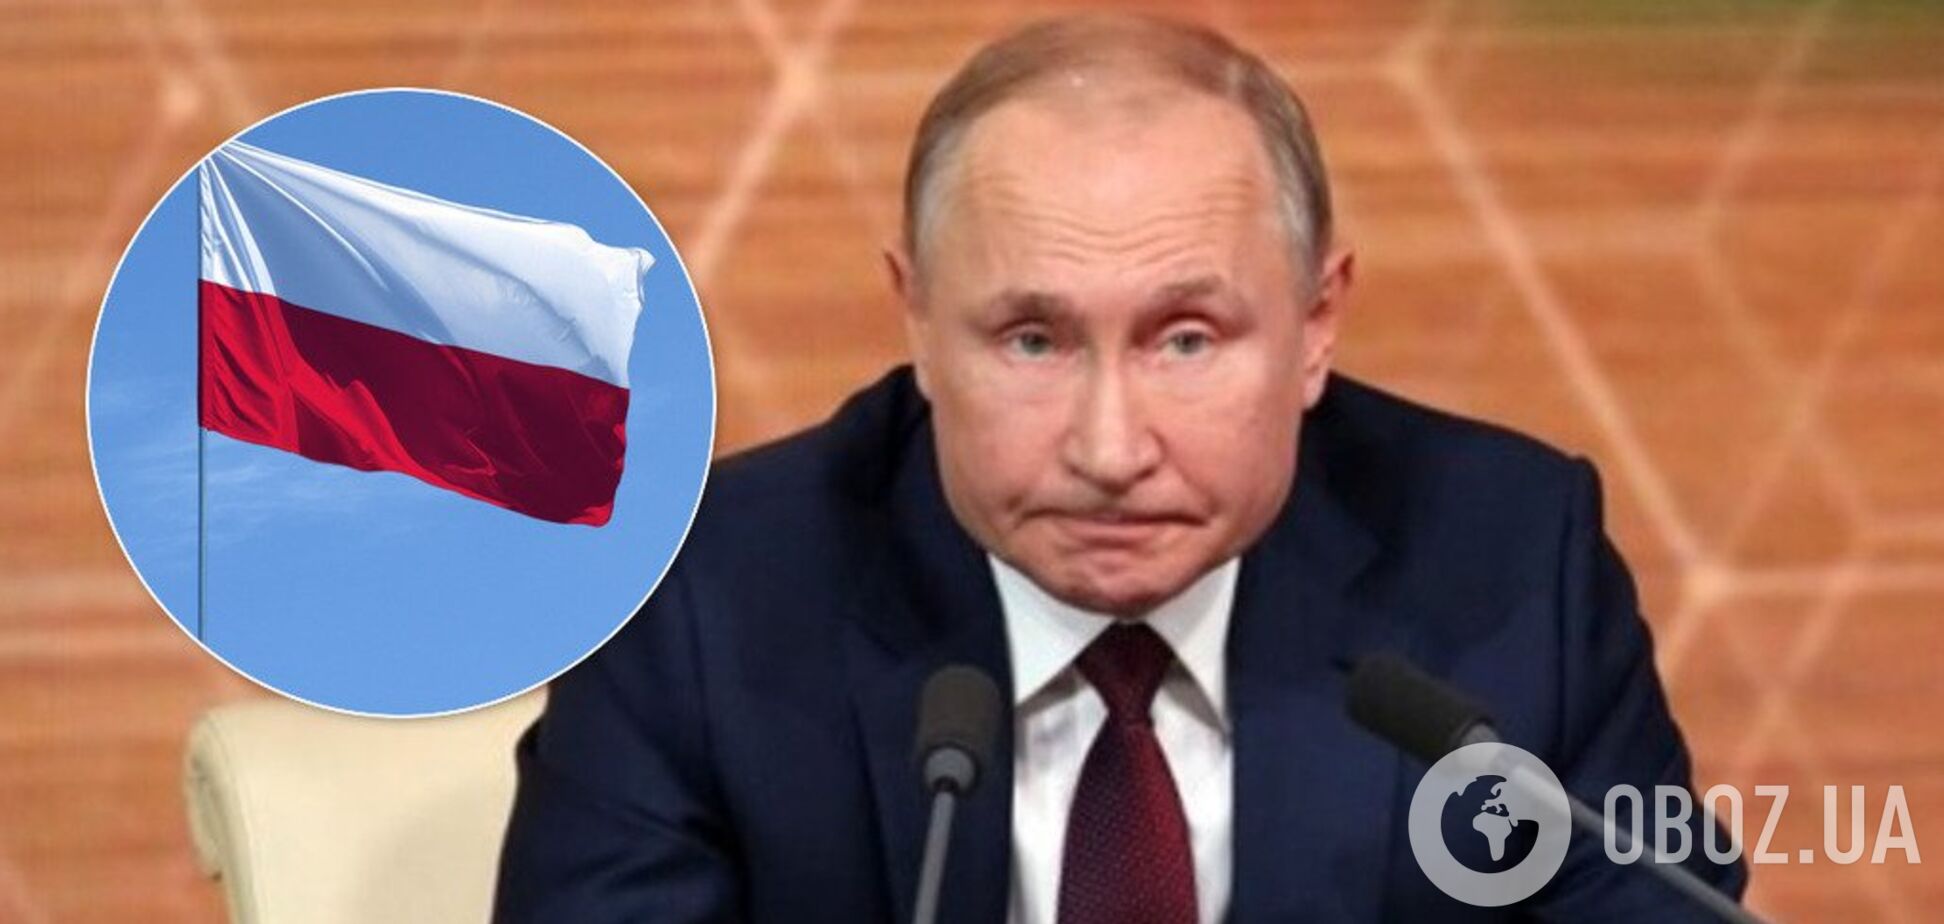 Ссора России с Польшей из-за второй мировой: Путину бросили вызов